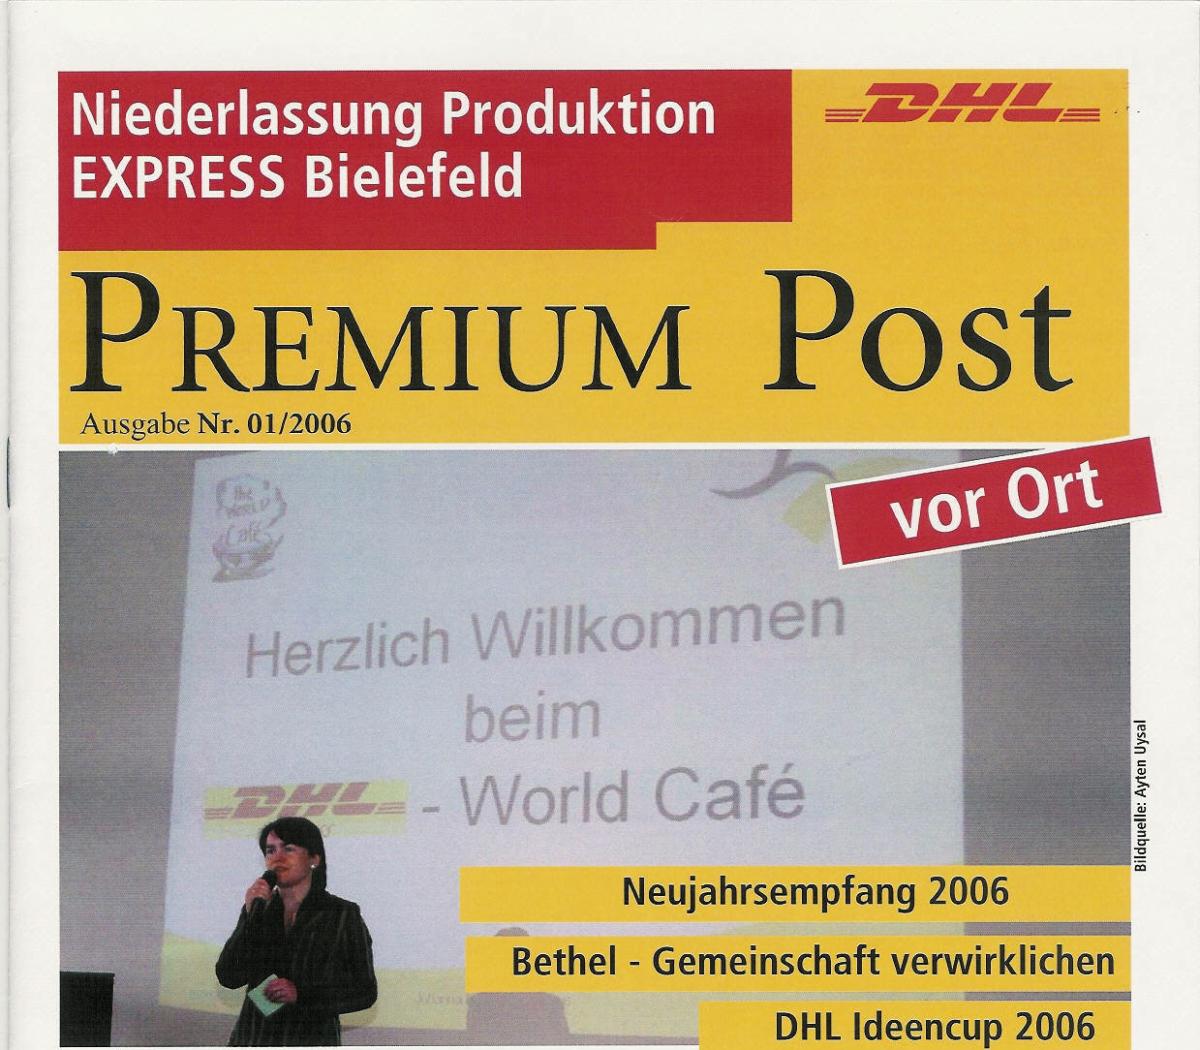 Erstes World Café bei der NL Express Bielefeld 2006